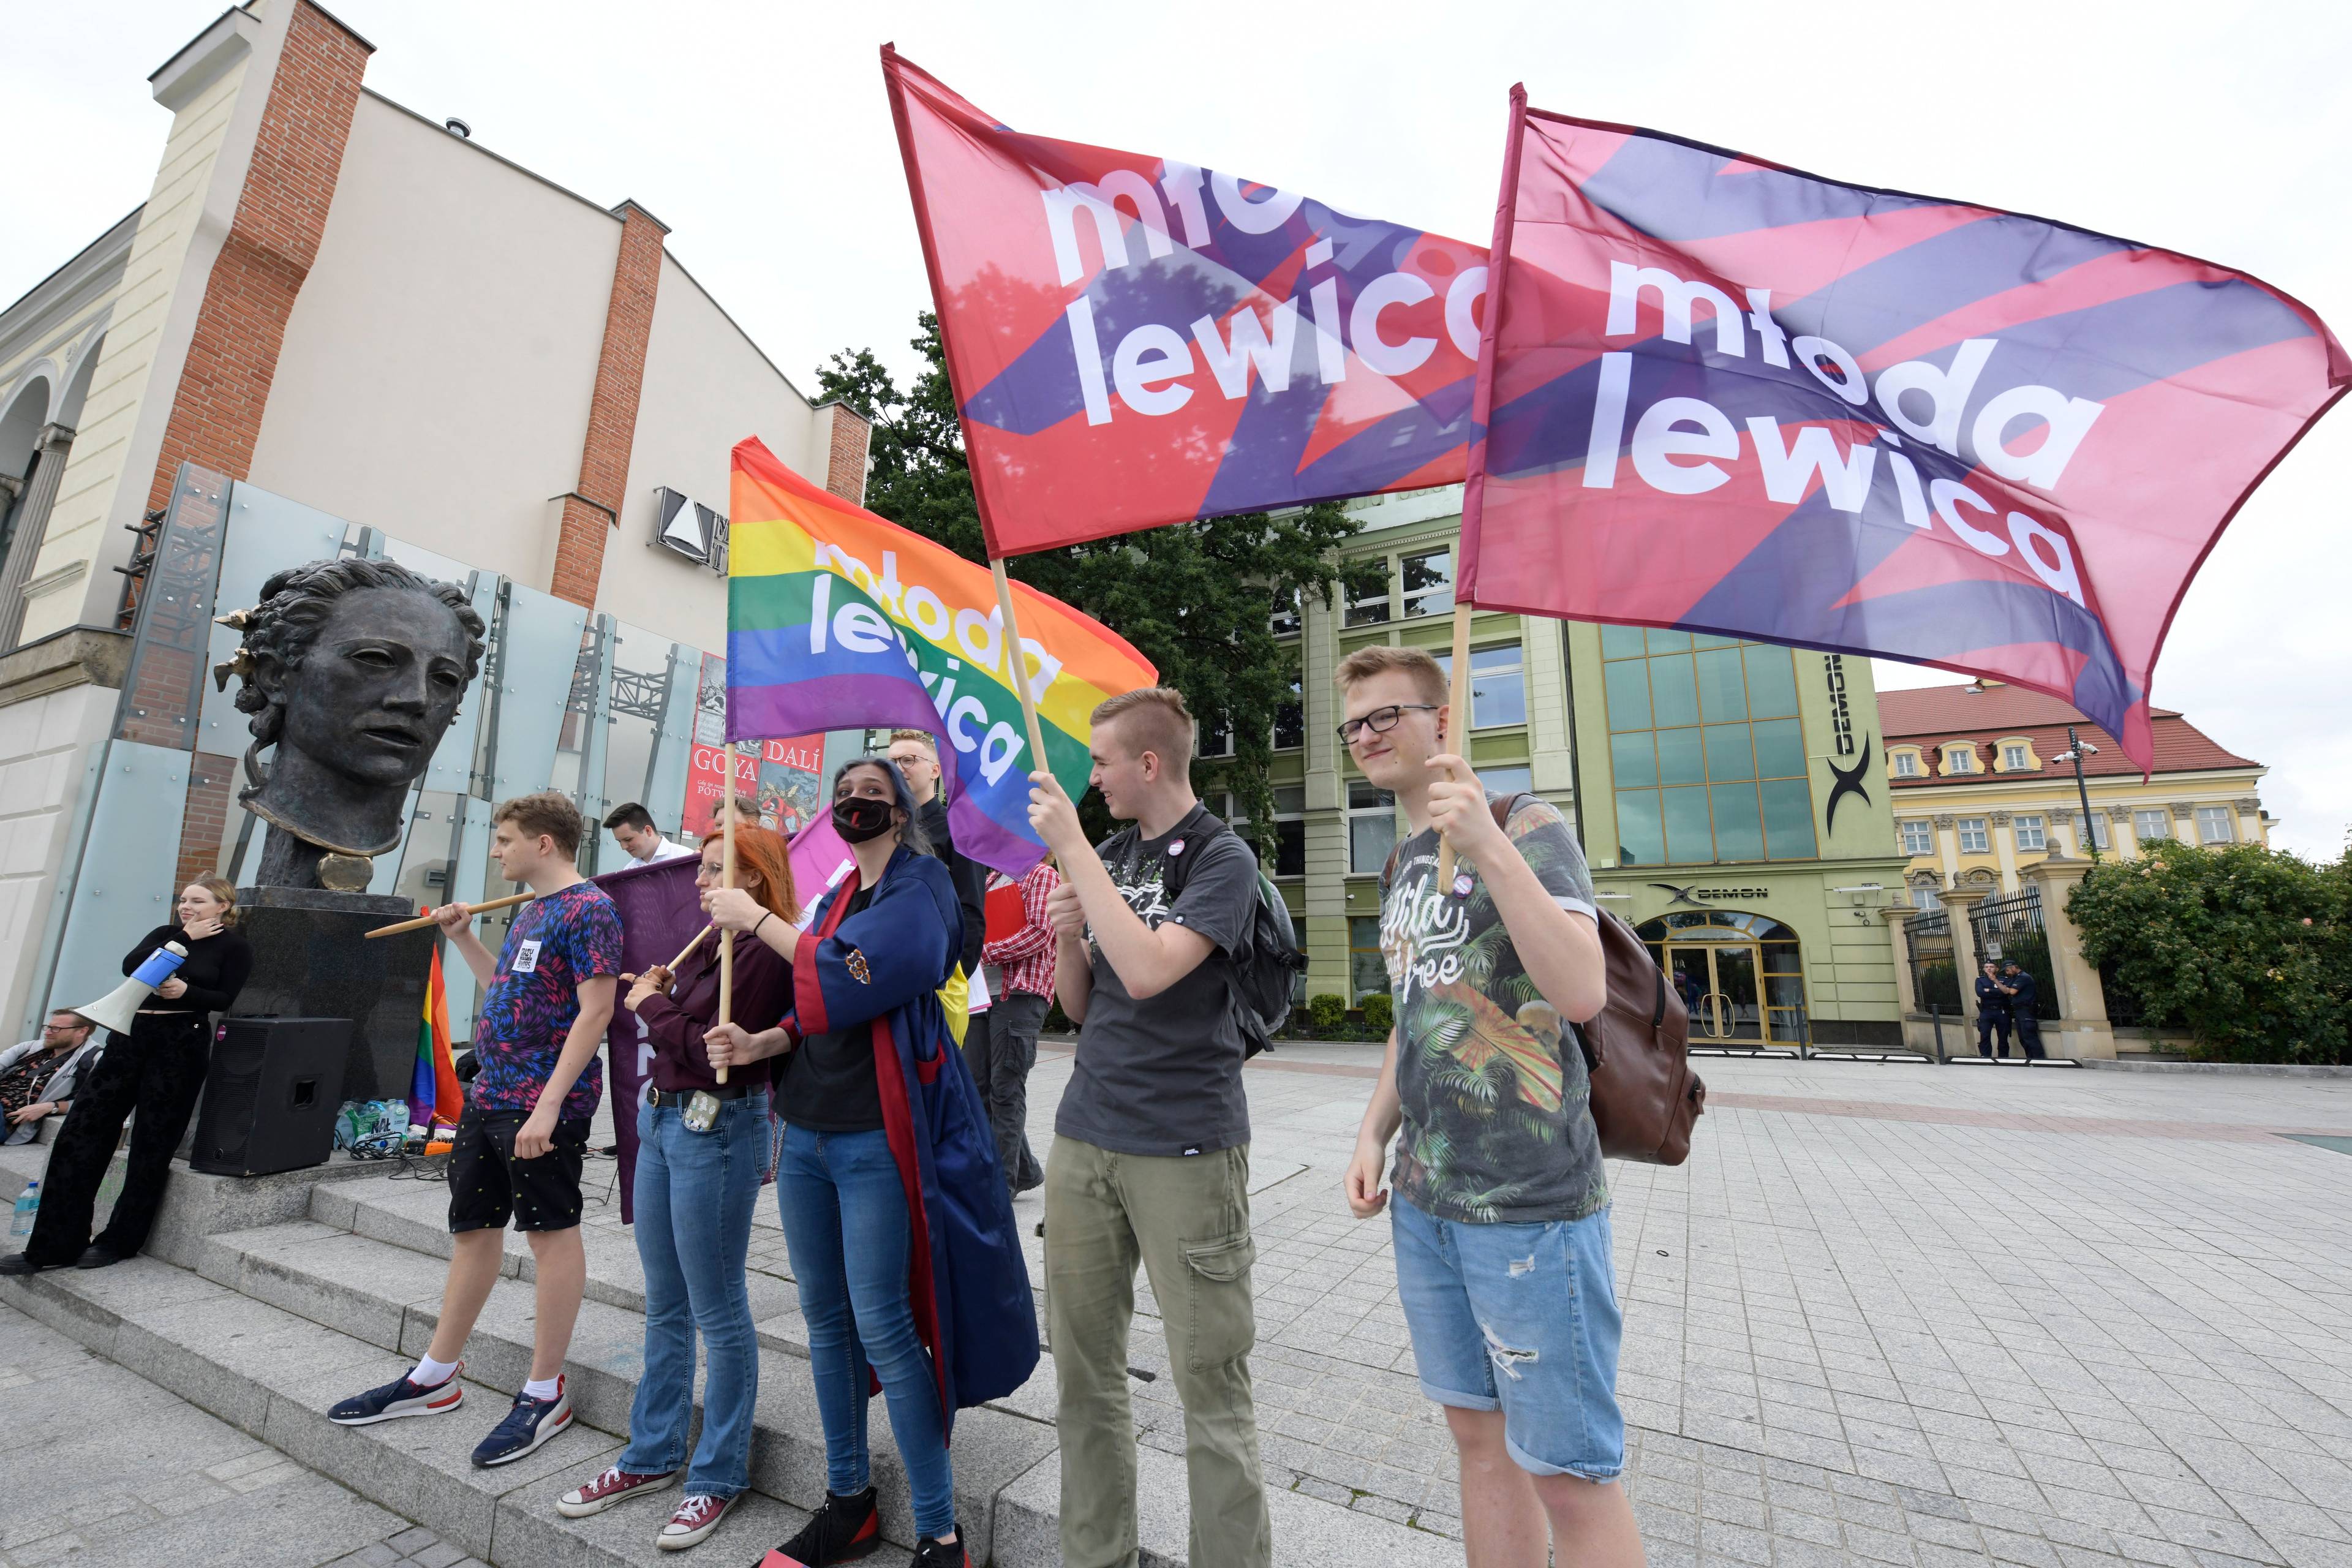 grupa młodzieży stoi na placu z powiewającymi flagami, na których jest napisa "Młoda lewica". Jena z flag jest w kolorach tęczy.